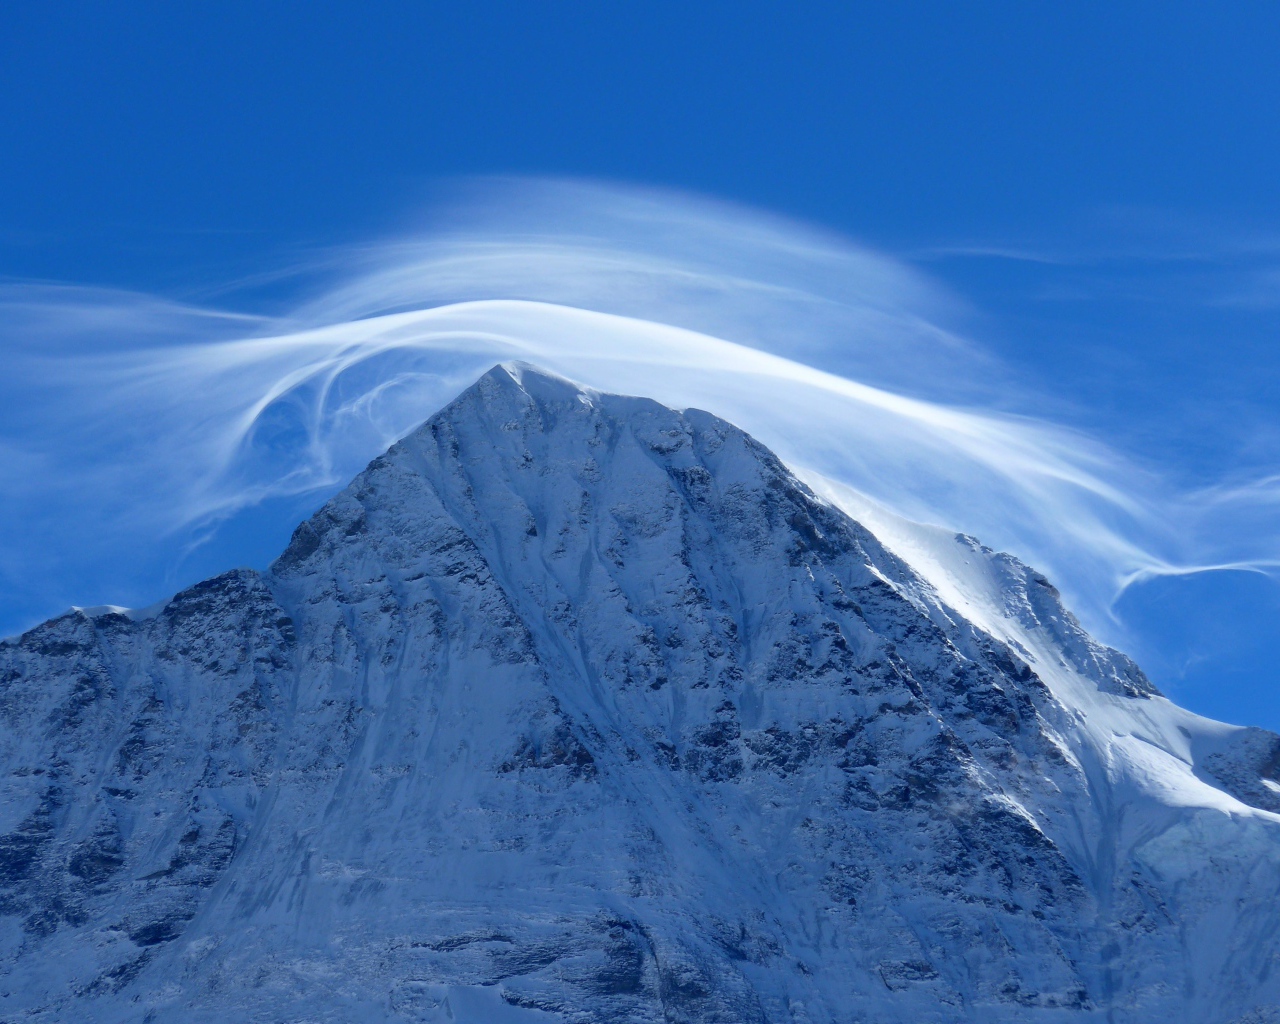 Белое облако в голубом небе над заснеженной горной вершиной